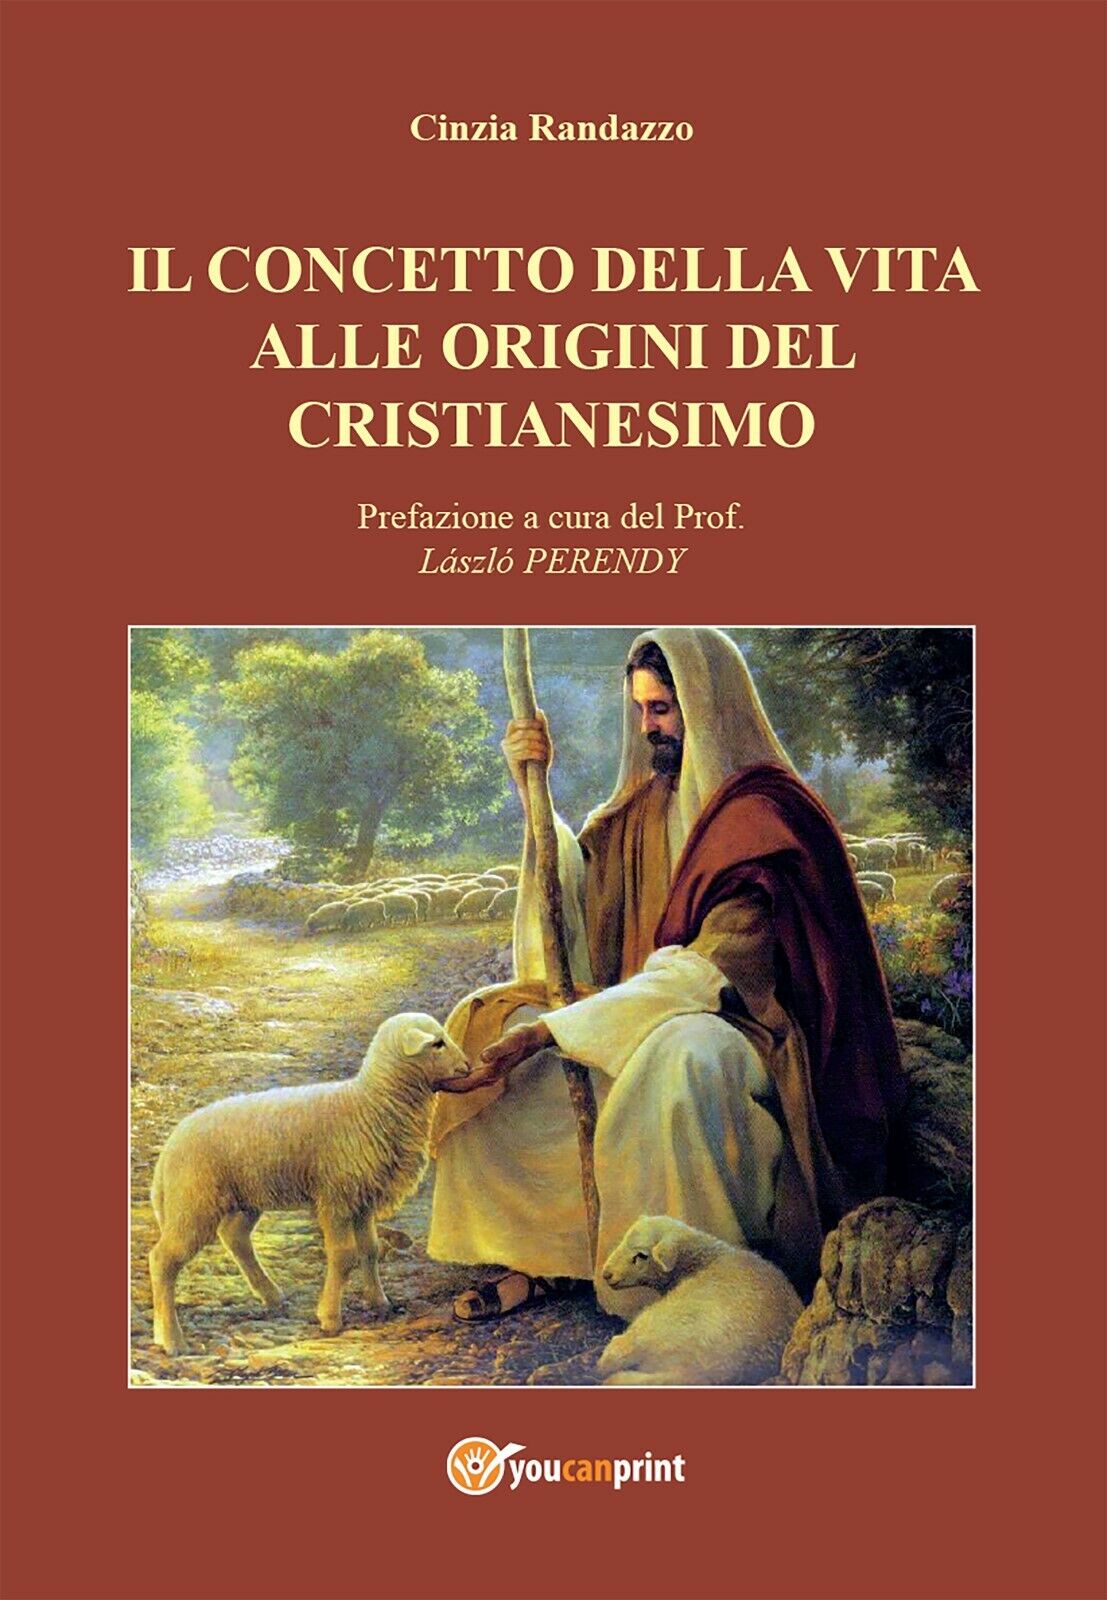 Il concetto della vita alle origini del cristianesimo  di Cinzia Randazzo,  2016 libro usato